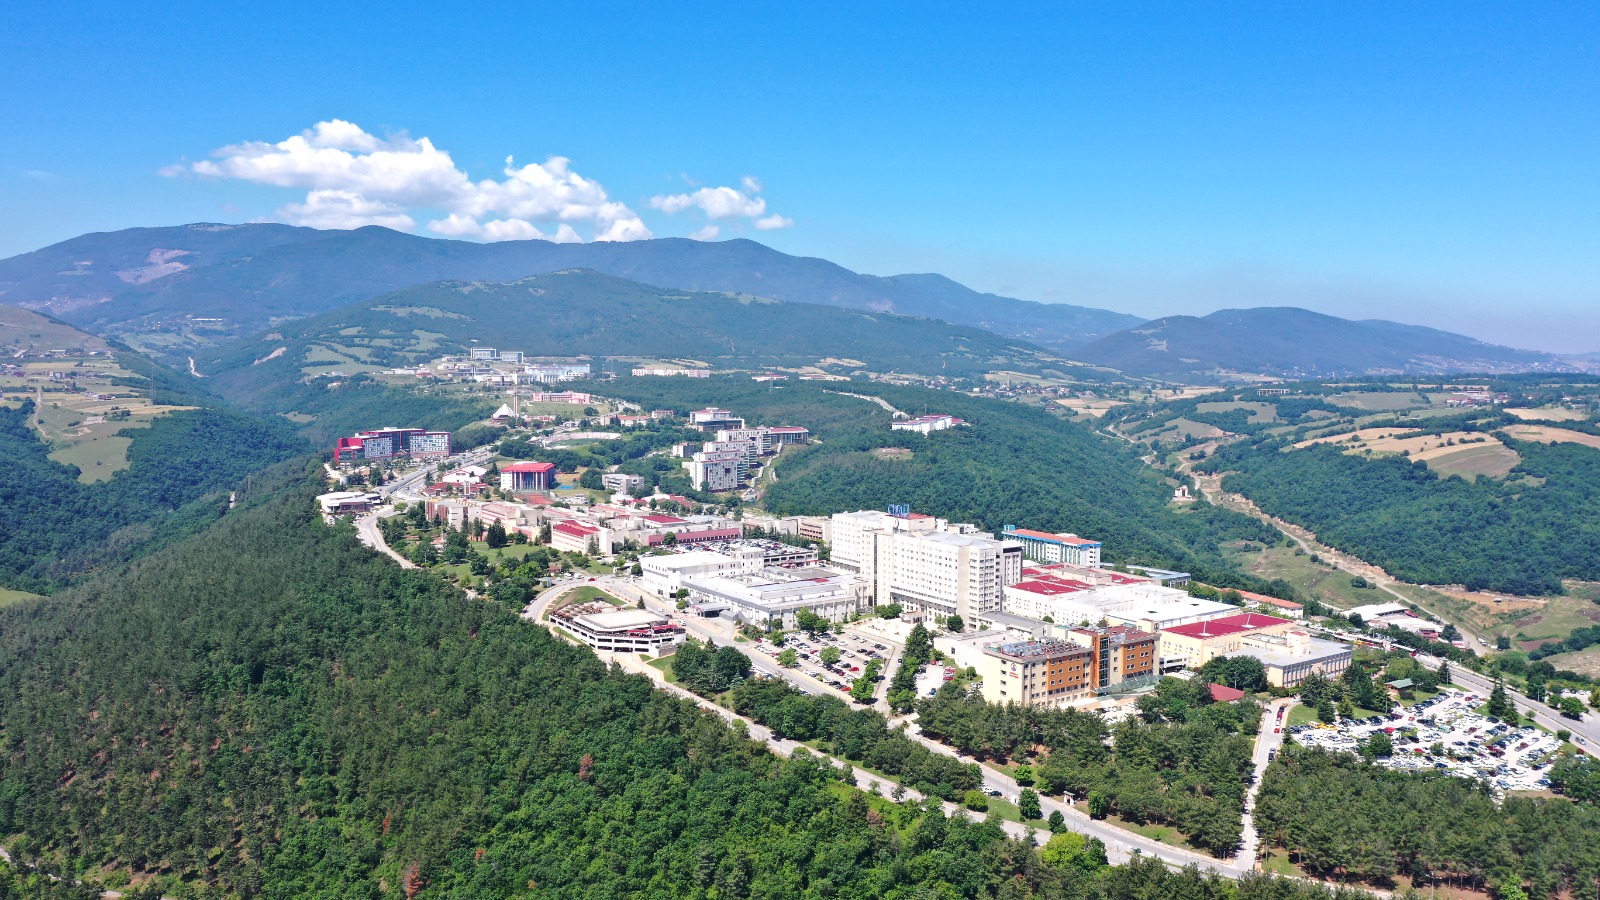 amasya universitesi find and study 3 - Amasya University